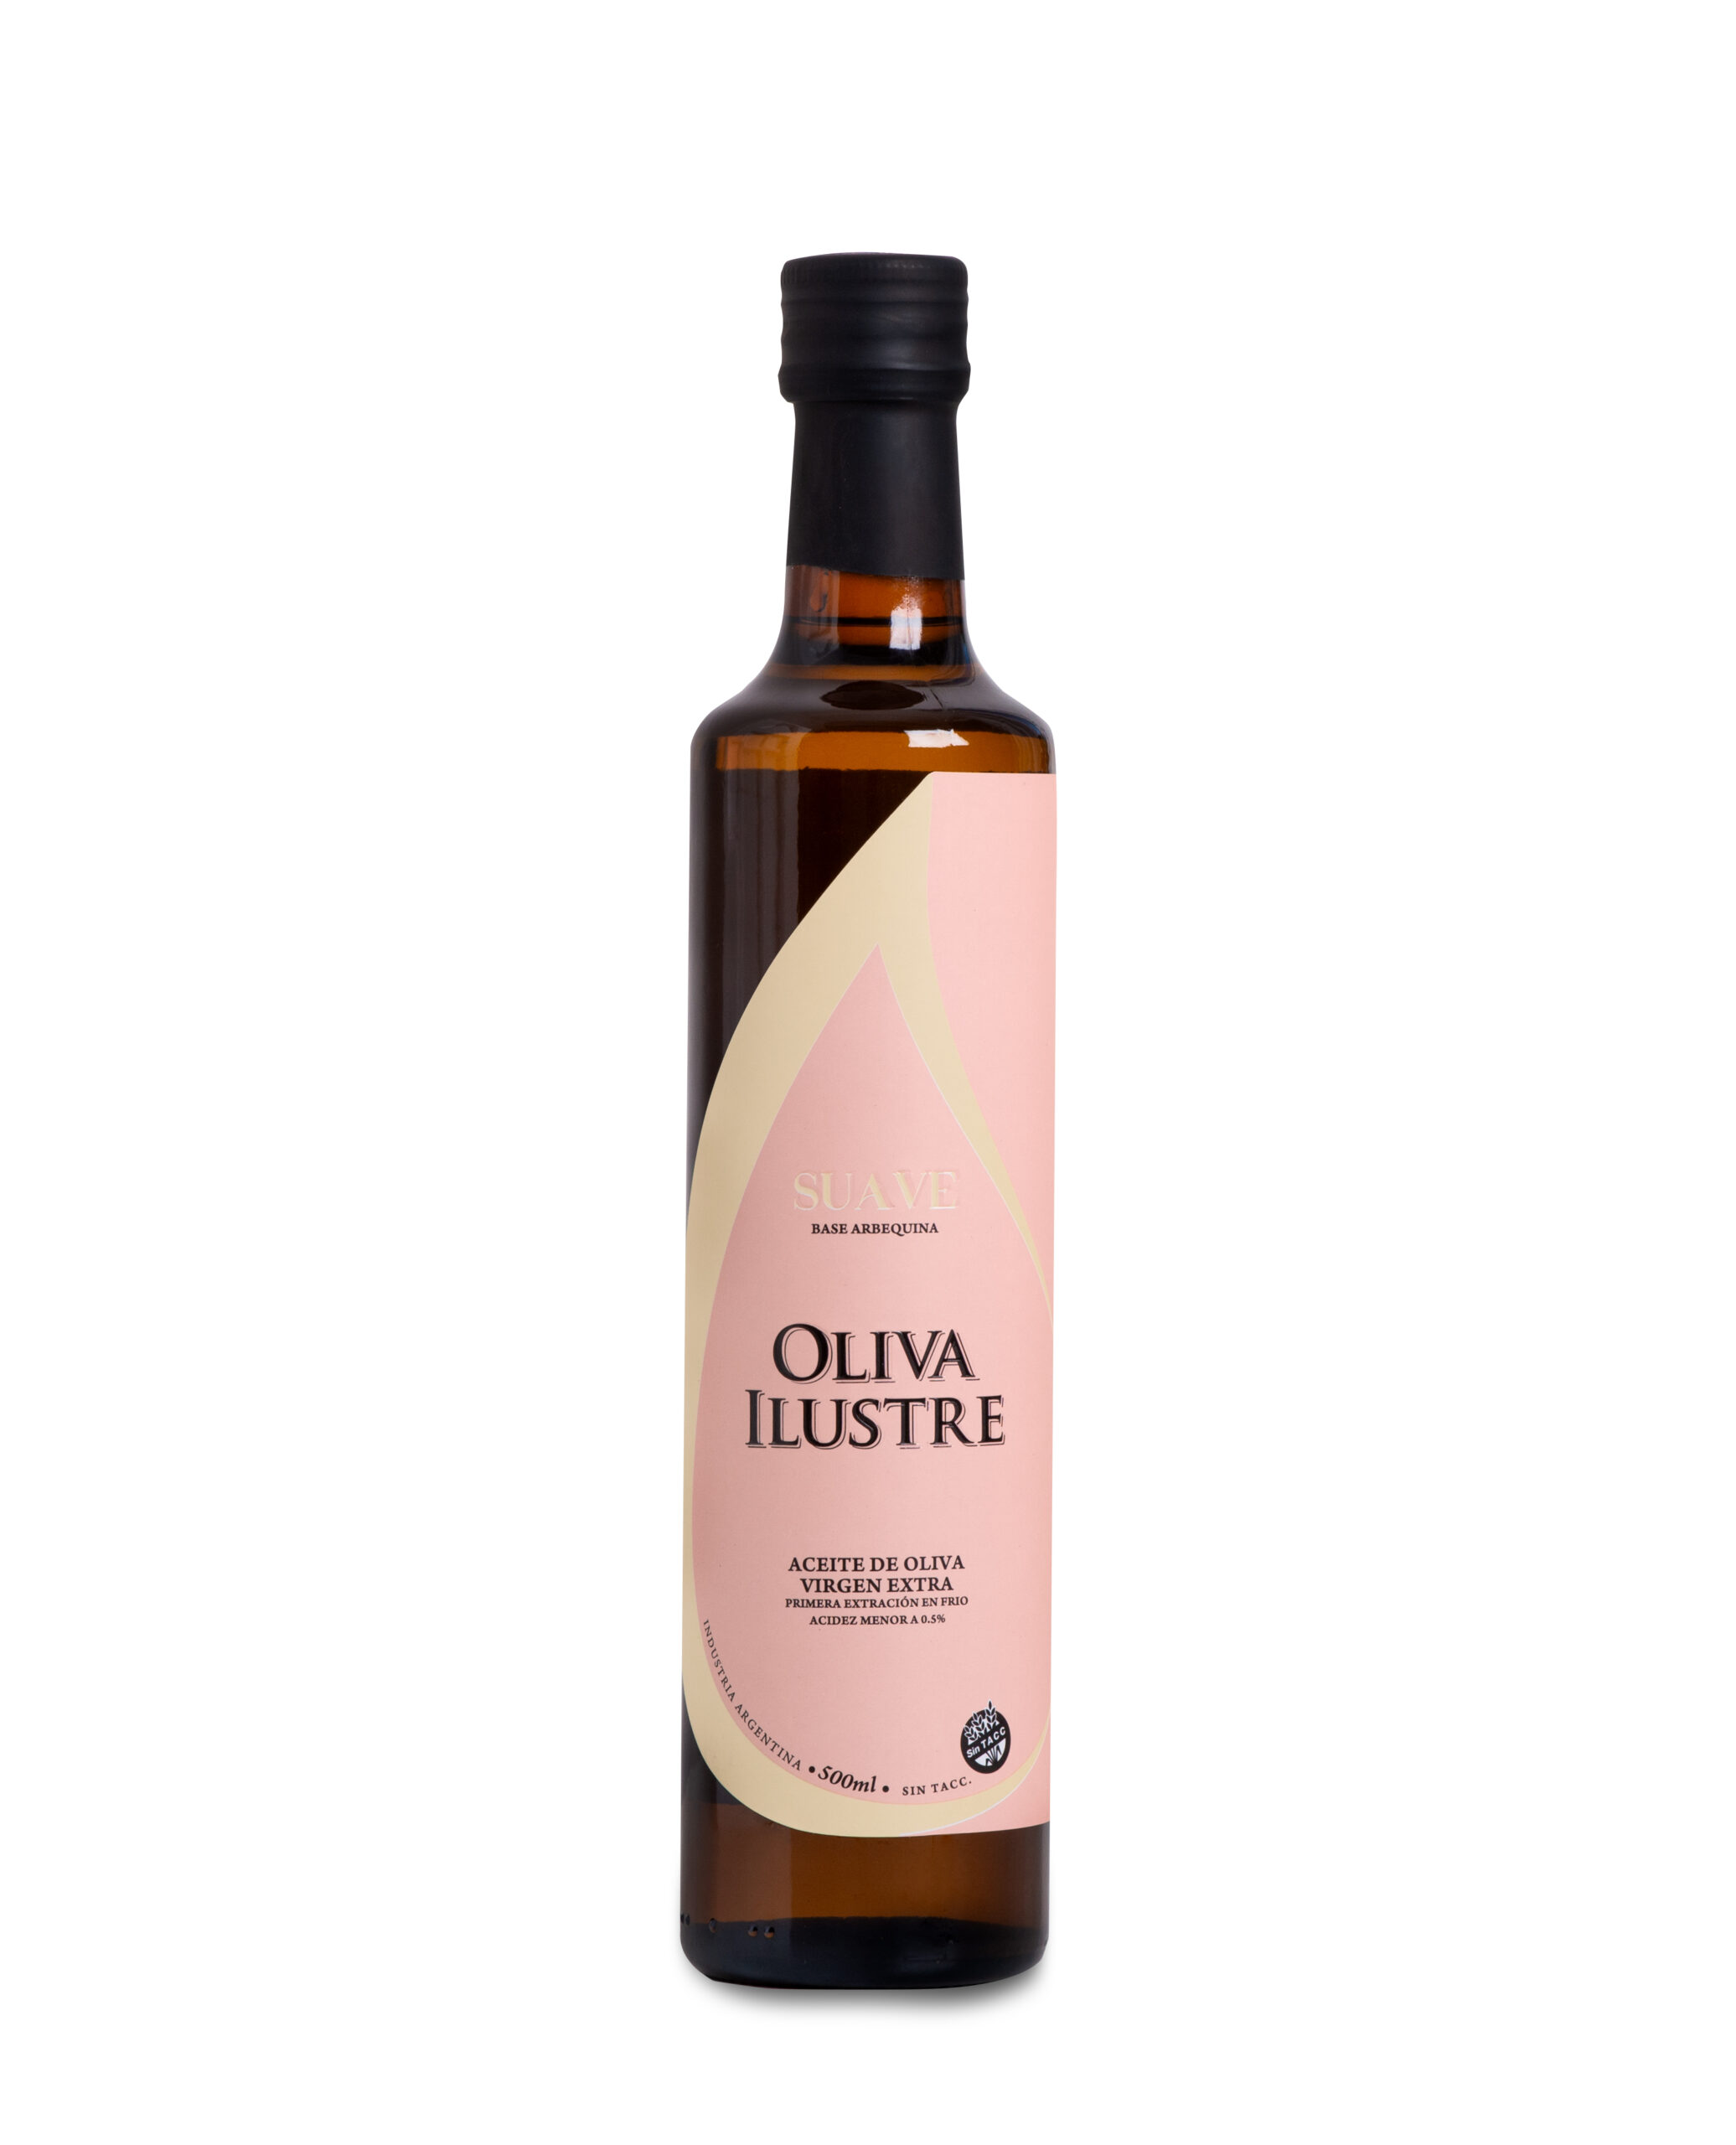 Aceite de Oliva Suave – Botella 500ml